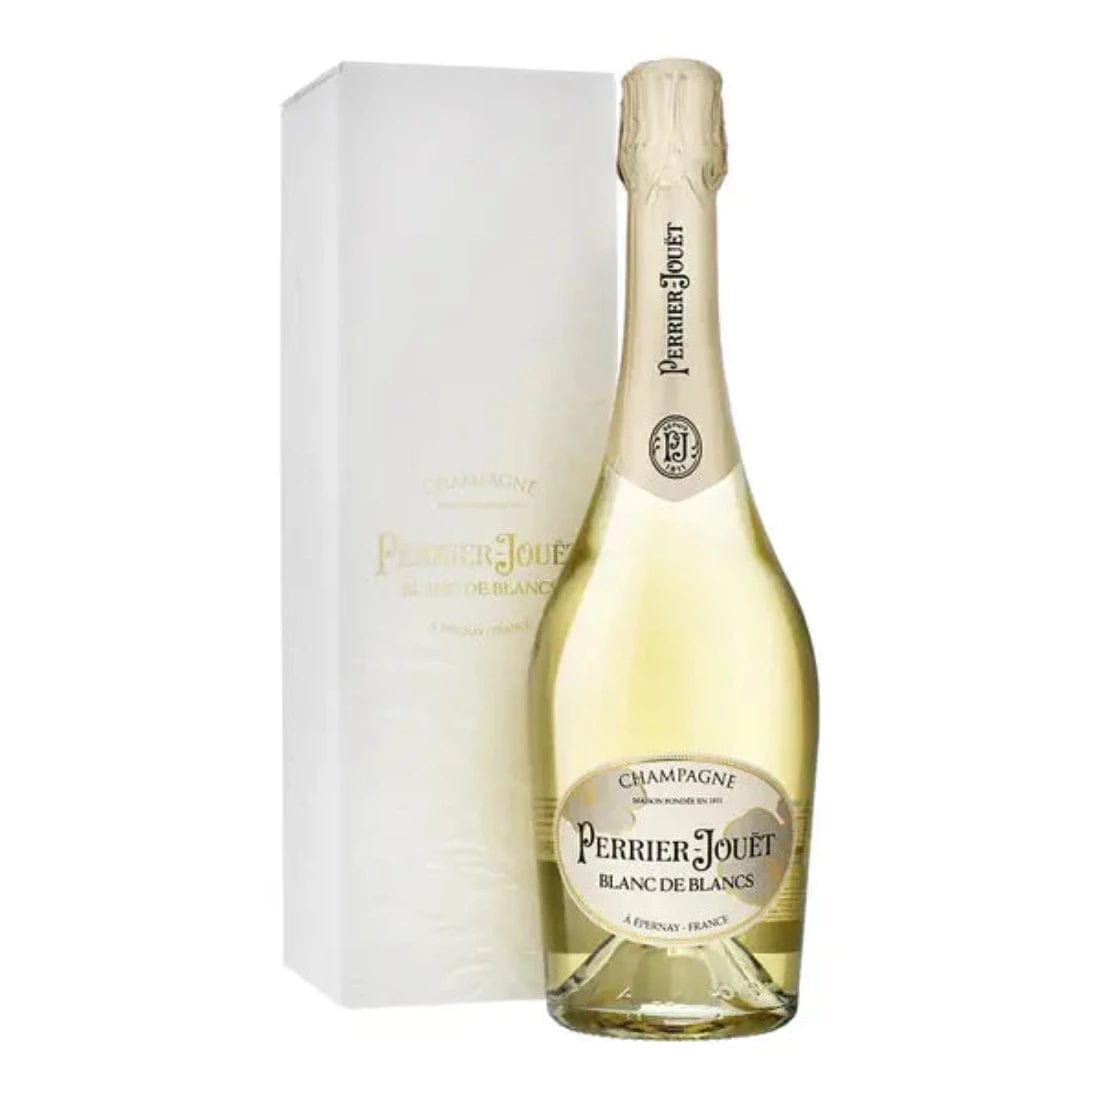 Perrier-Jouët Blanc de Blancs Champagne Brut NV - Perrier-Jouet